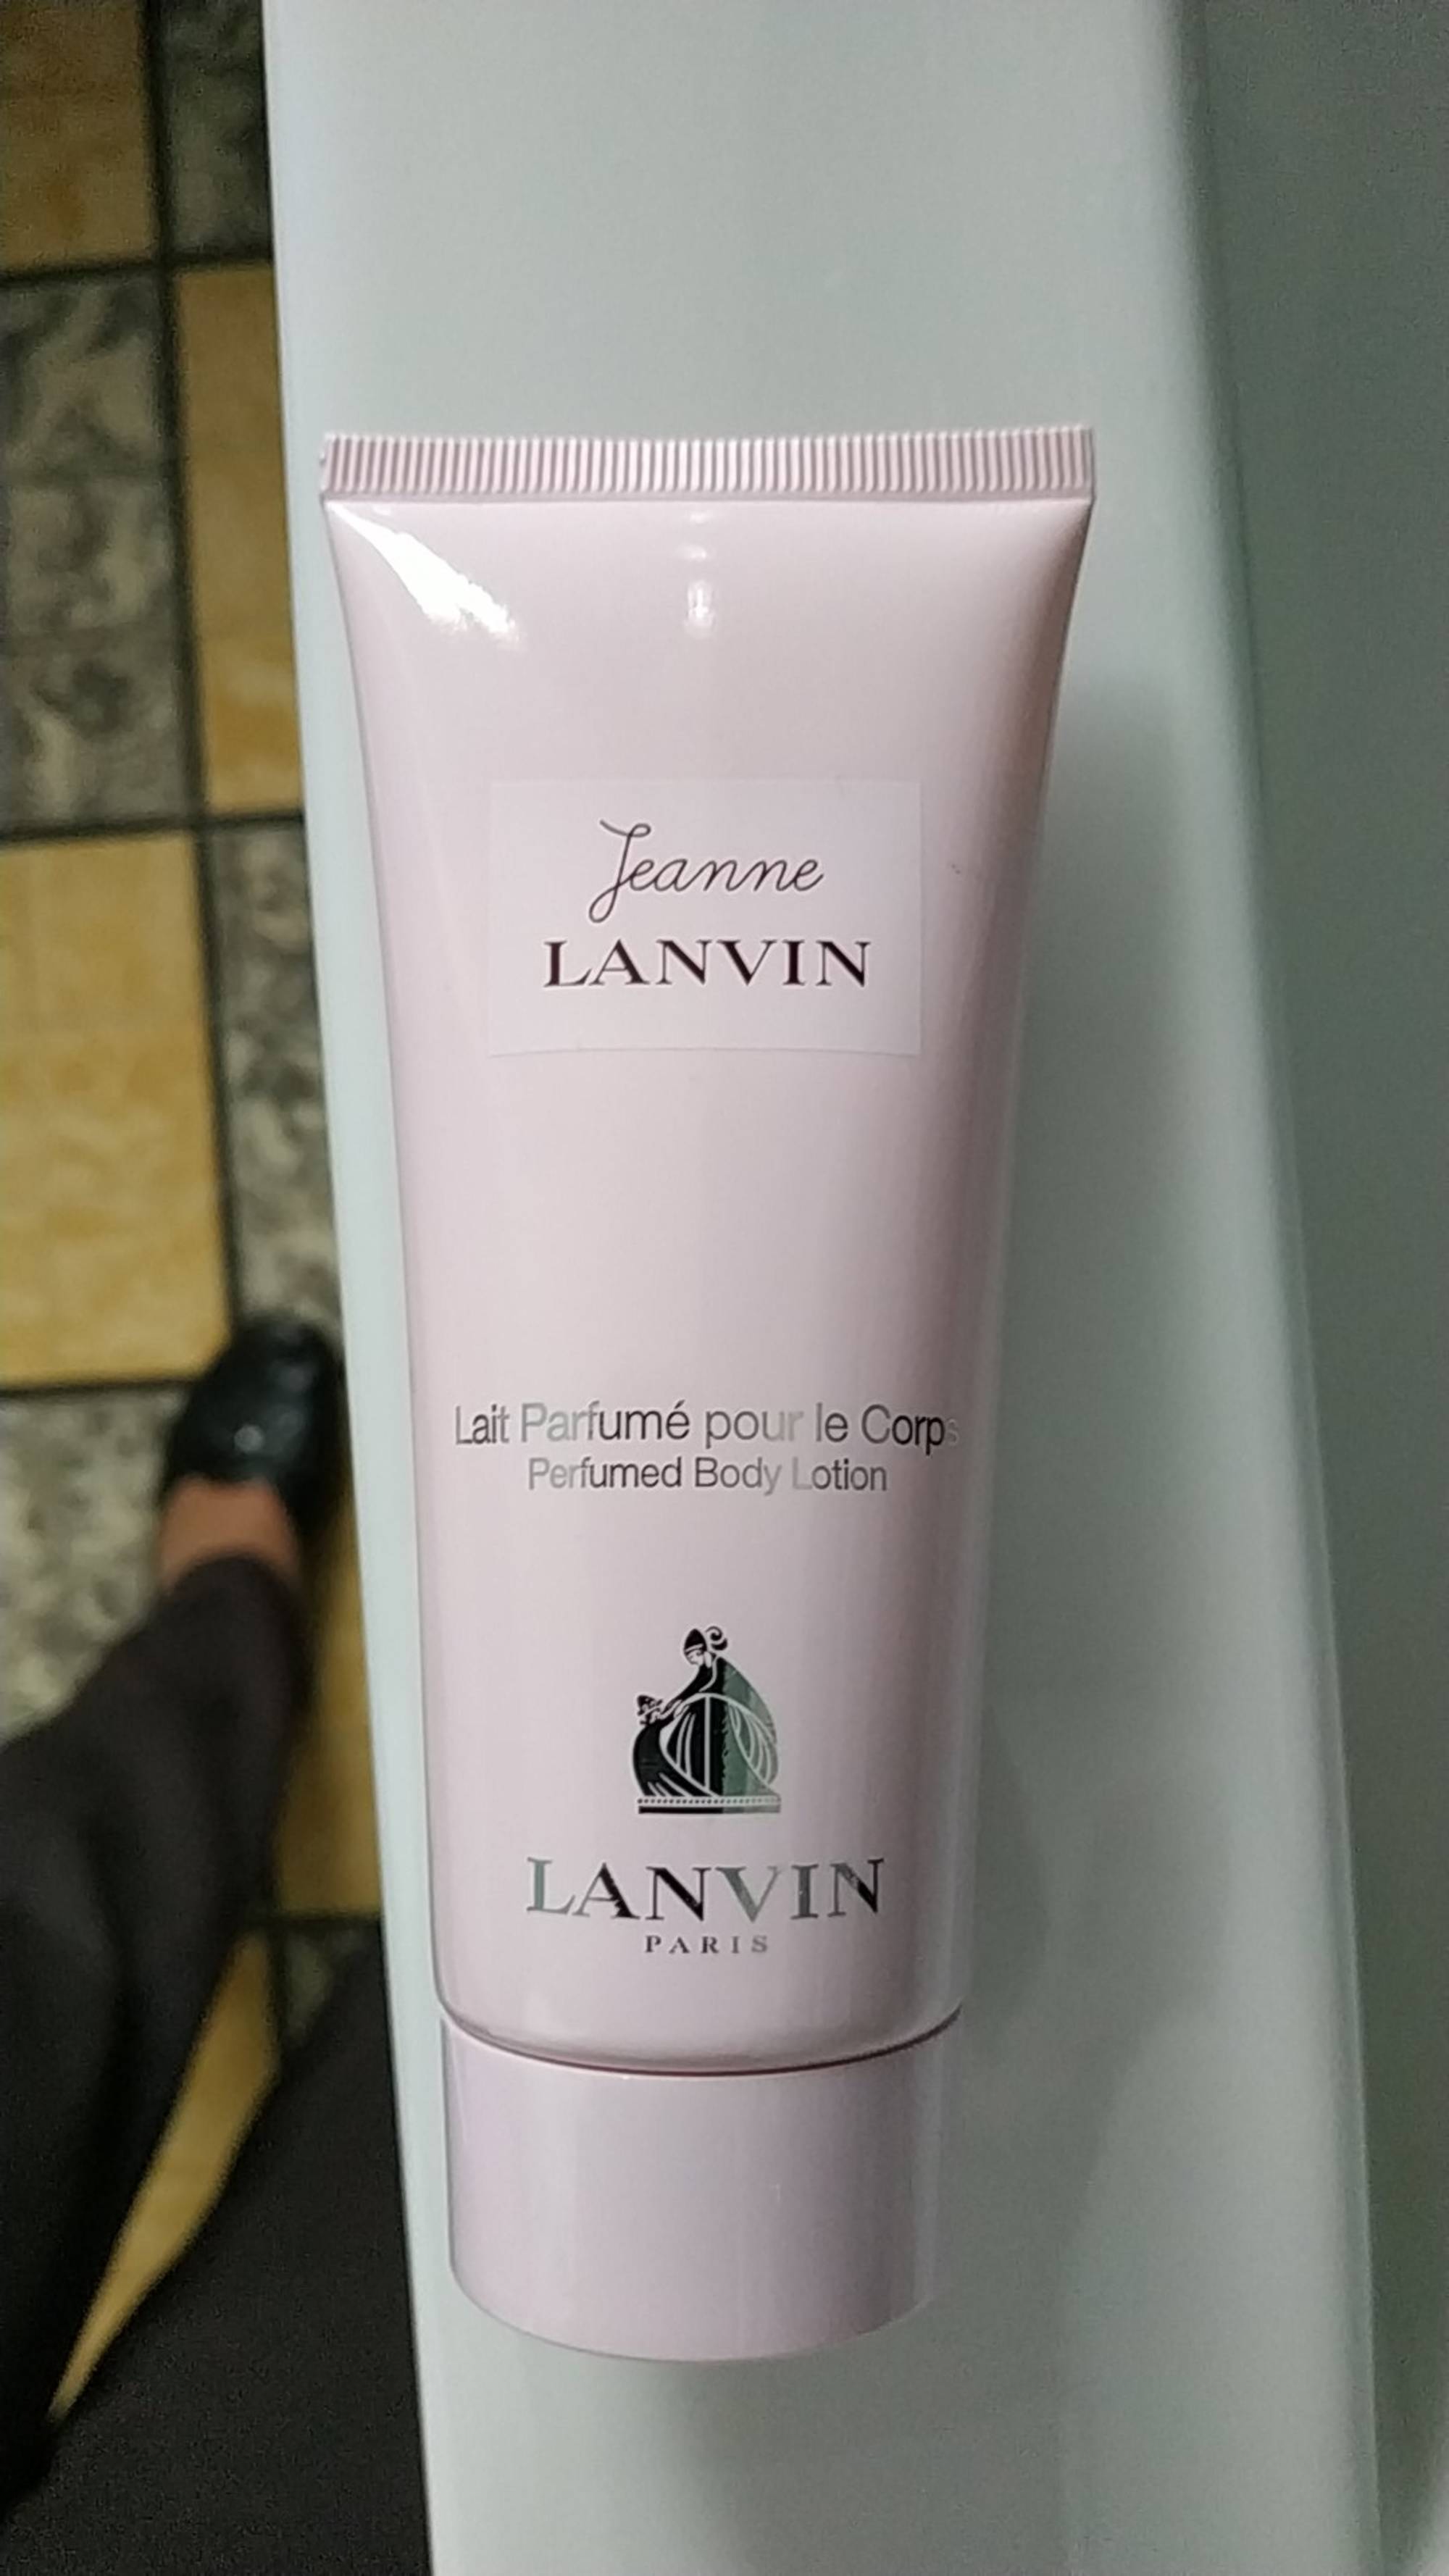 LANVIN - Jeanne lanvin - Lait parfumé pour le corps